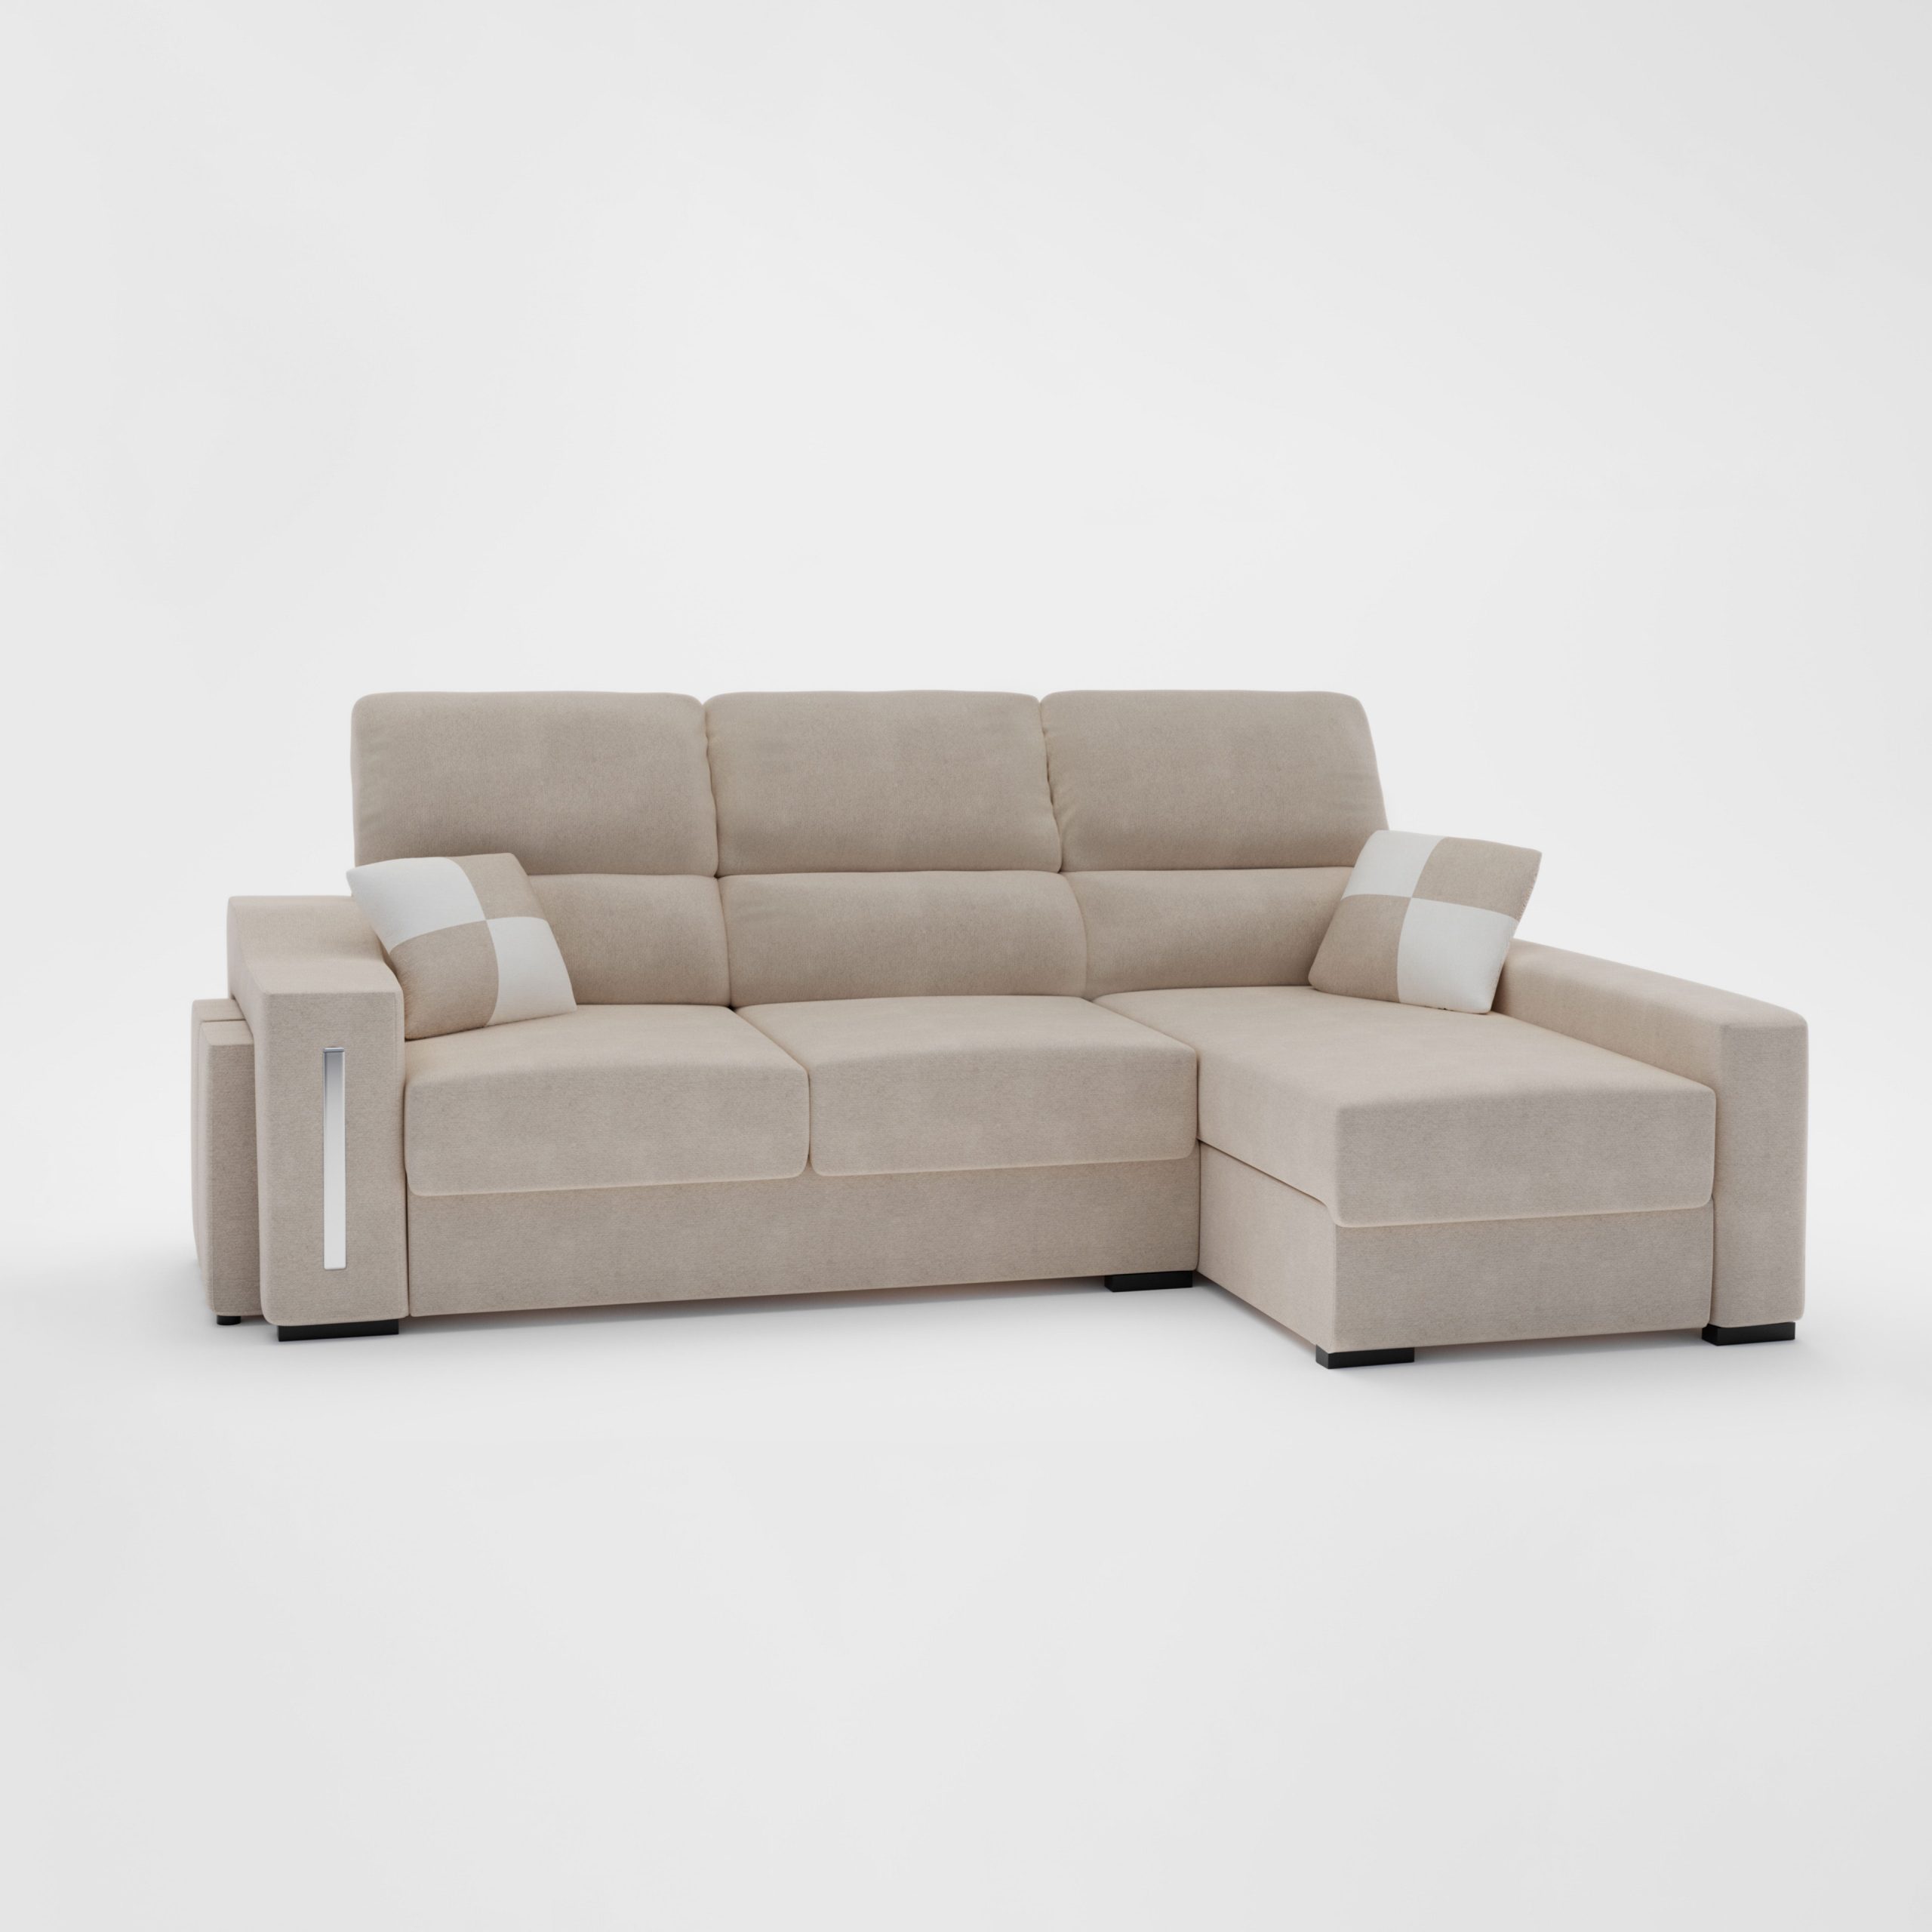 Render de producto sofa Muebles Boom